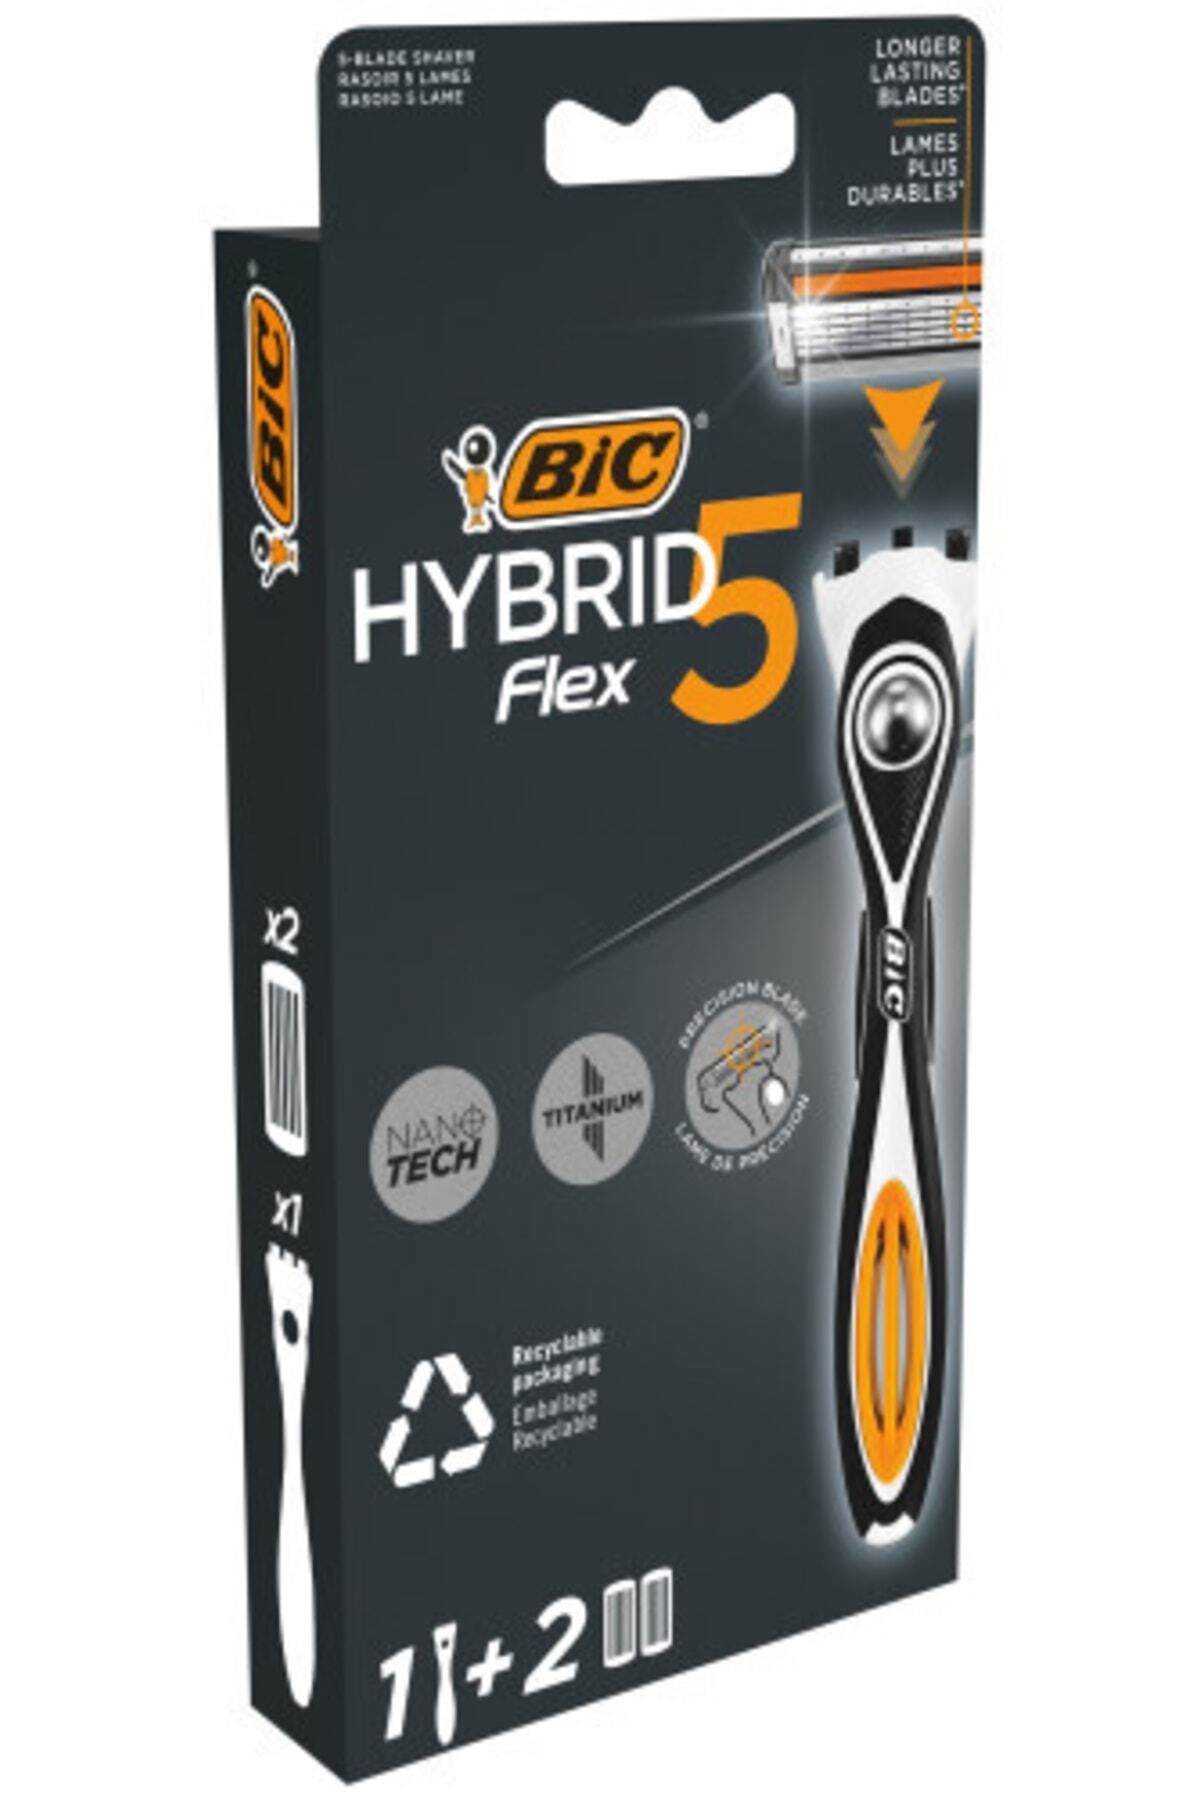 Bic Flex 5 Hybrid Erkek Tıraş Bıçağı 1 Sap 2 Başlık (5 BIÇAK)